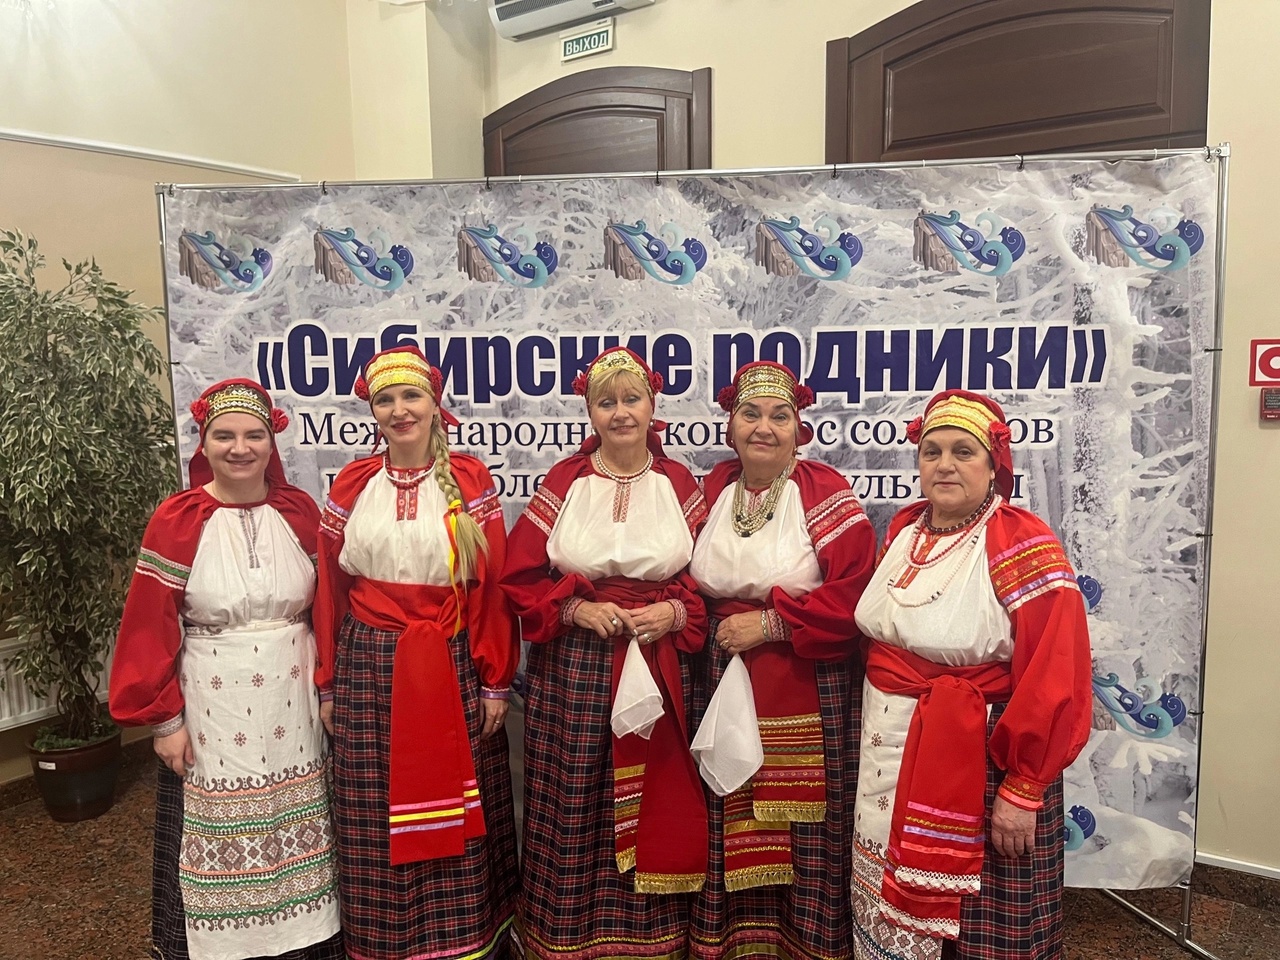  Ансамбль народной песни выступил на конкурсе «Сибирские родники»